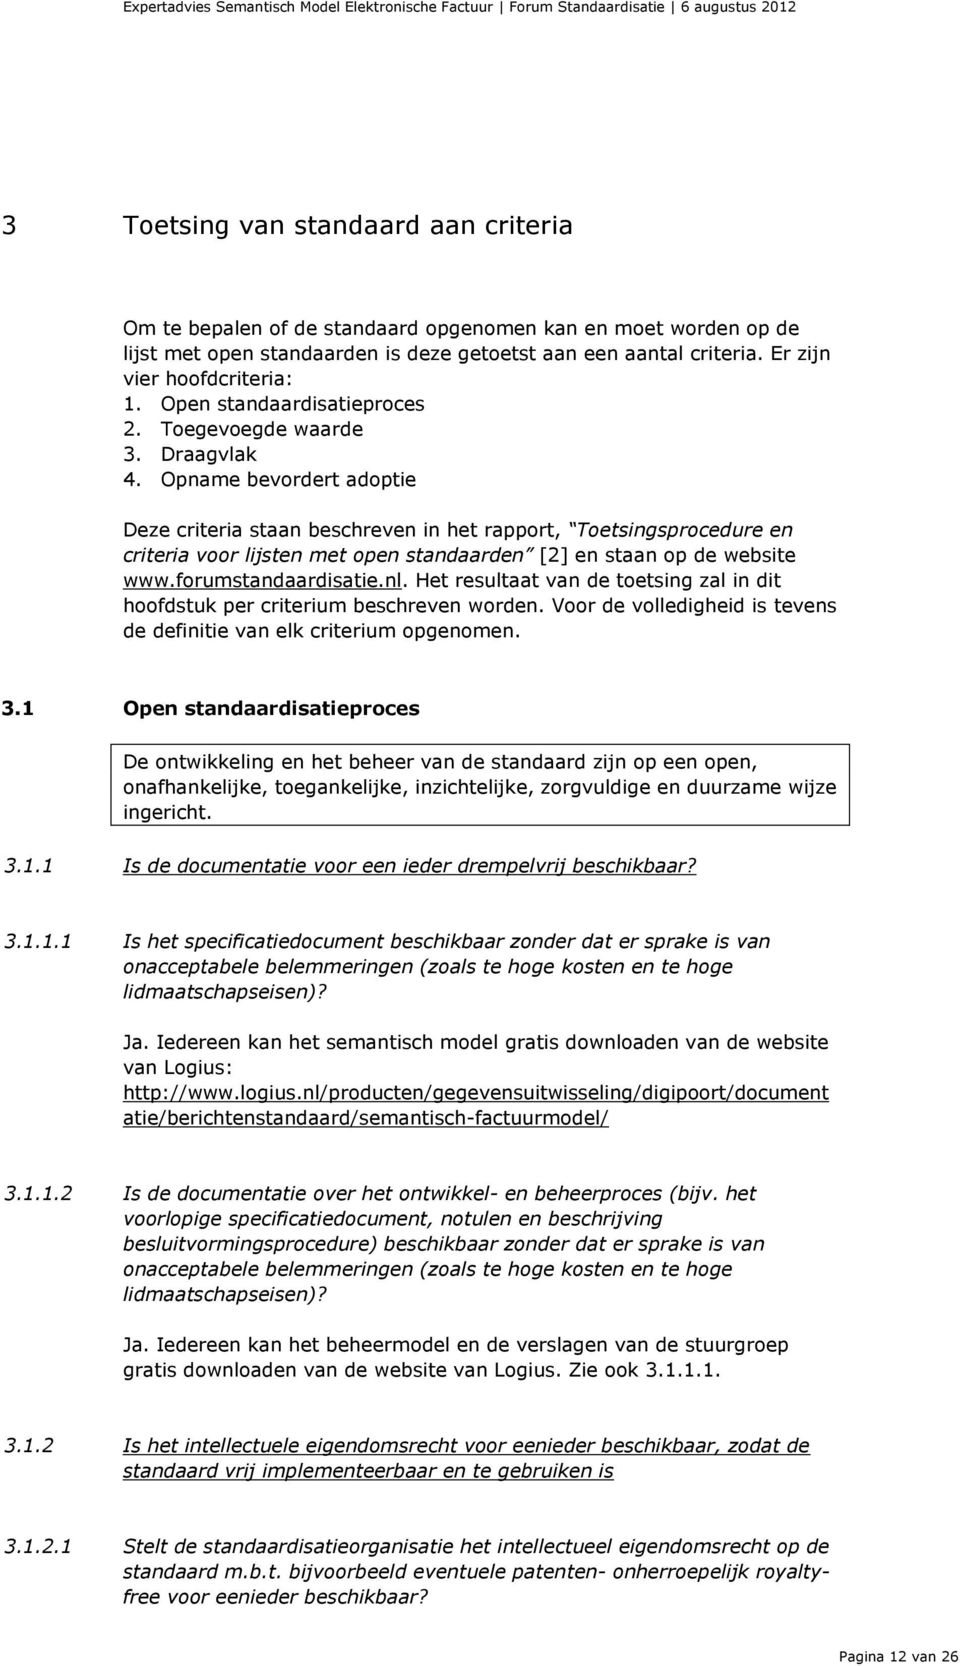 Opname bevordert adoptie Deze criteria staan beschreven in het rapport, Toetsingsprocedure en criteria voor lijsten met open standaarden [2] en staan op de website www.forumstandaardisatie.nl.